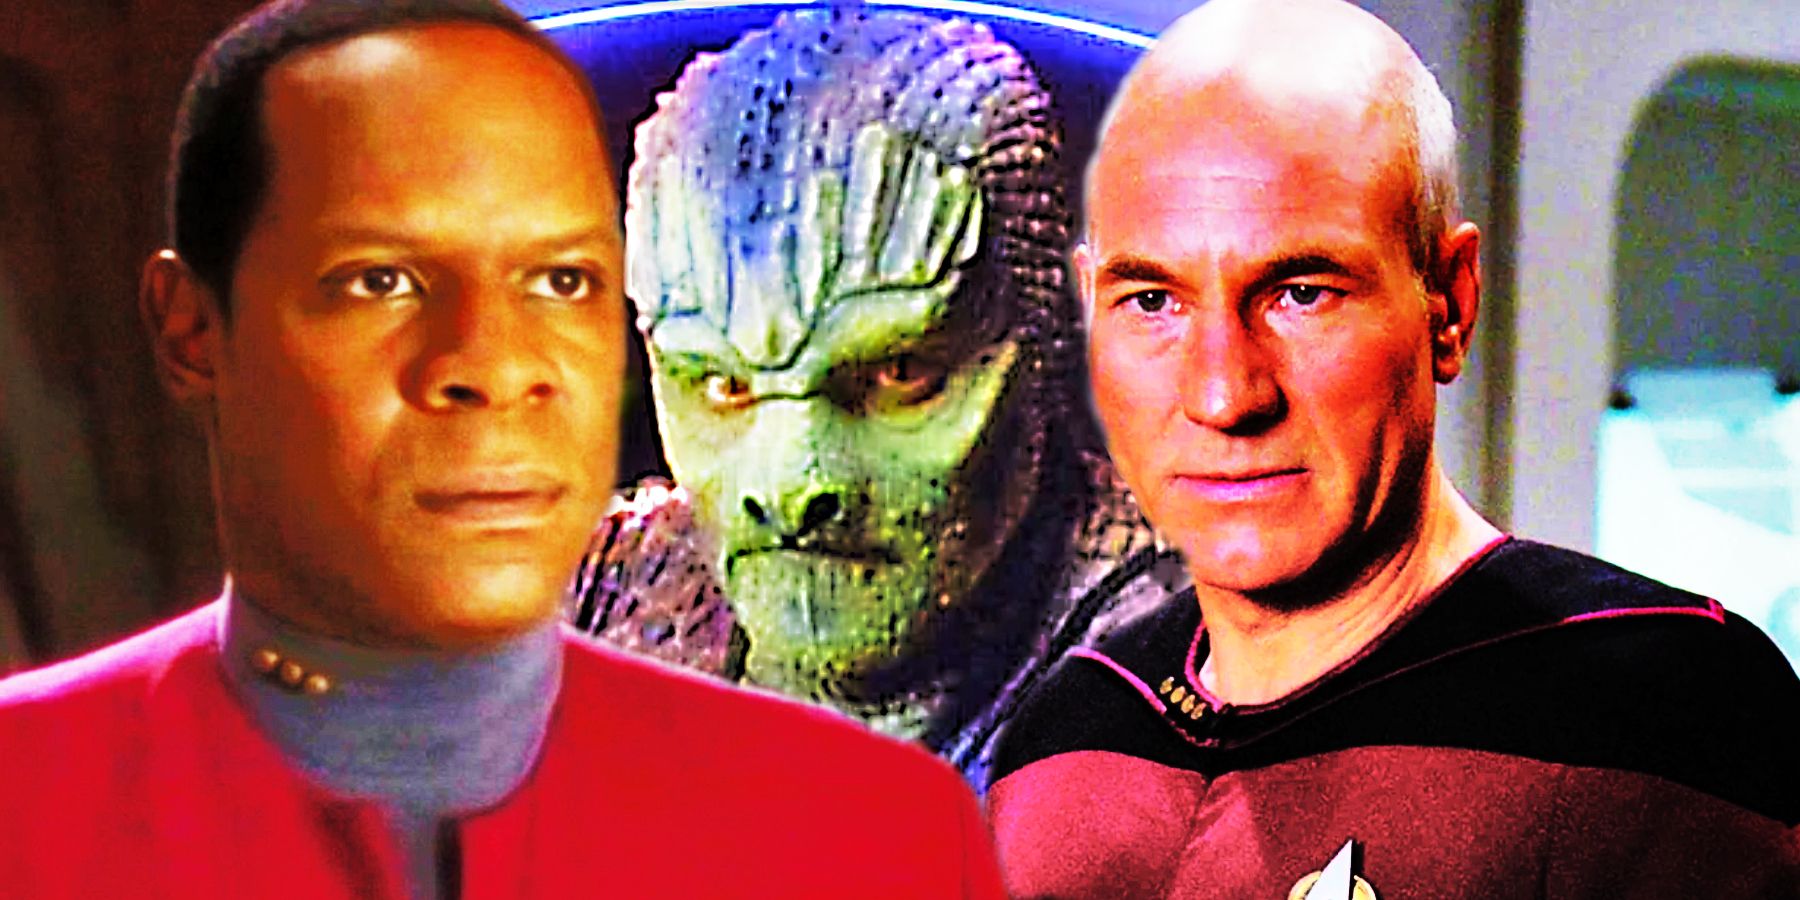 Sisko dan Picard tampak serius karena reptil Tosk mencurigakan